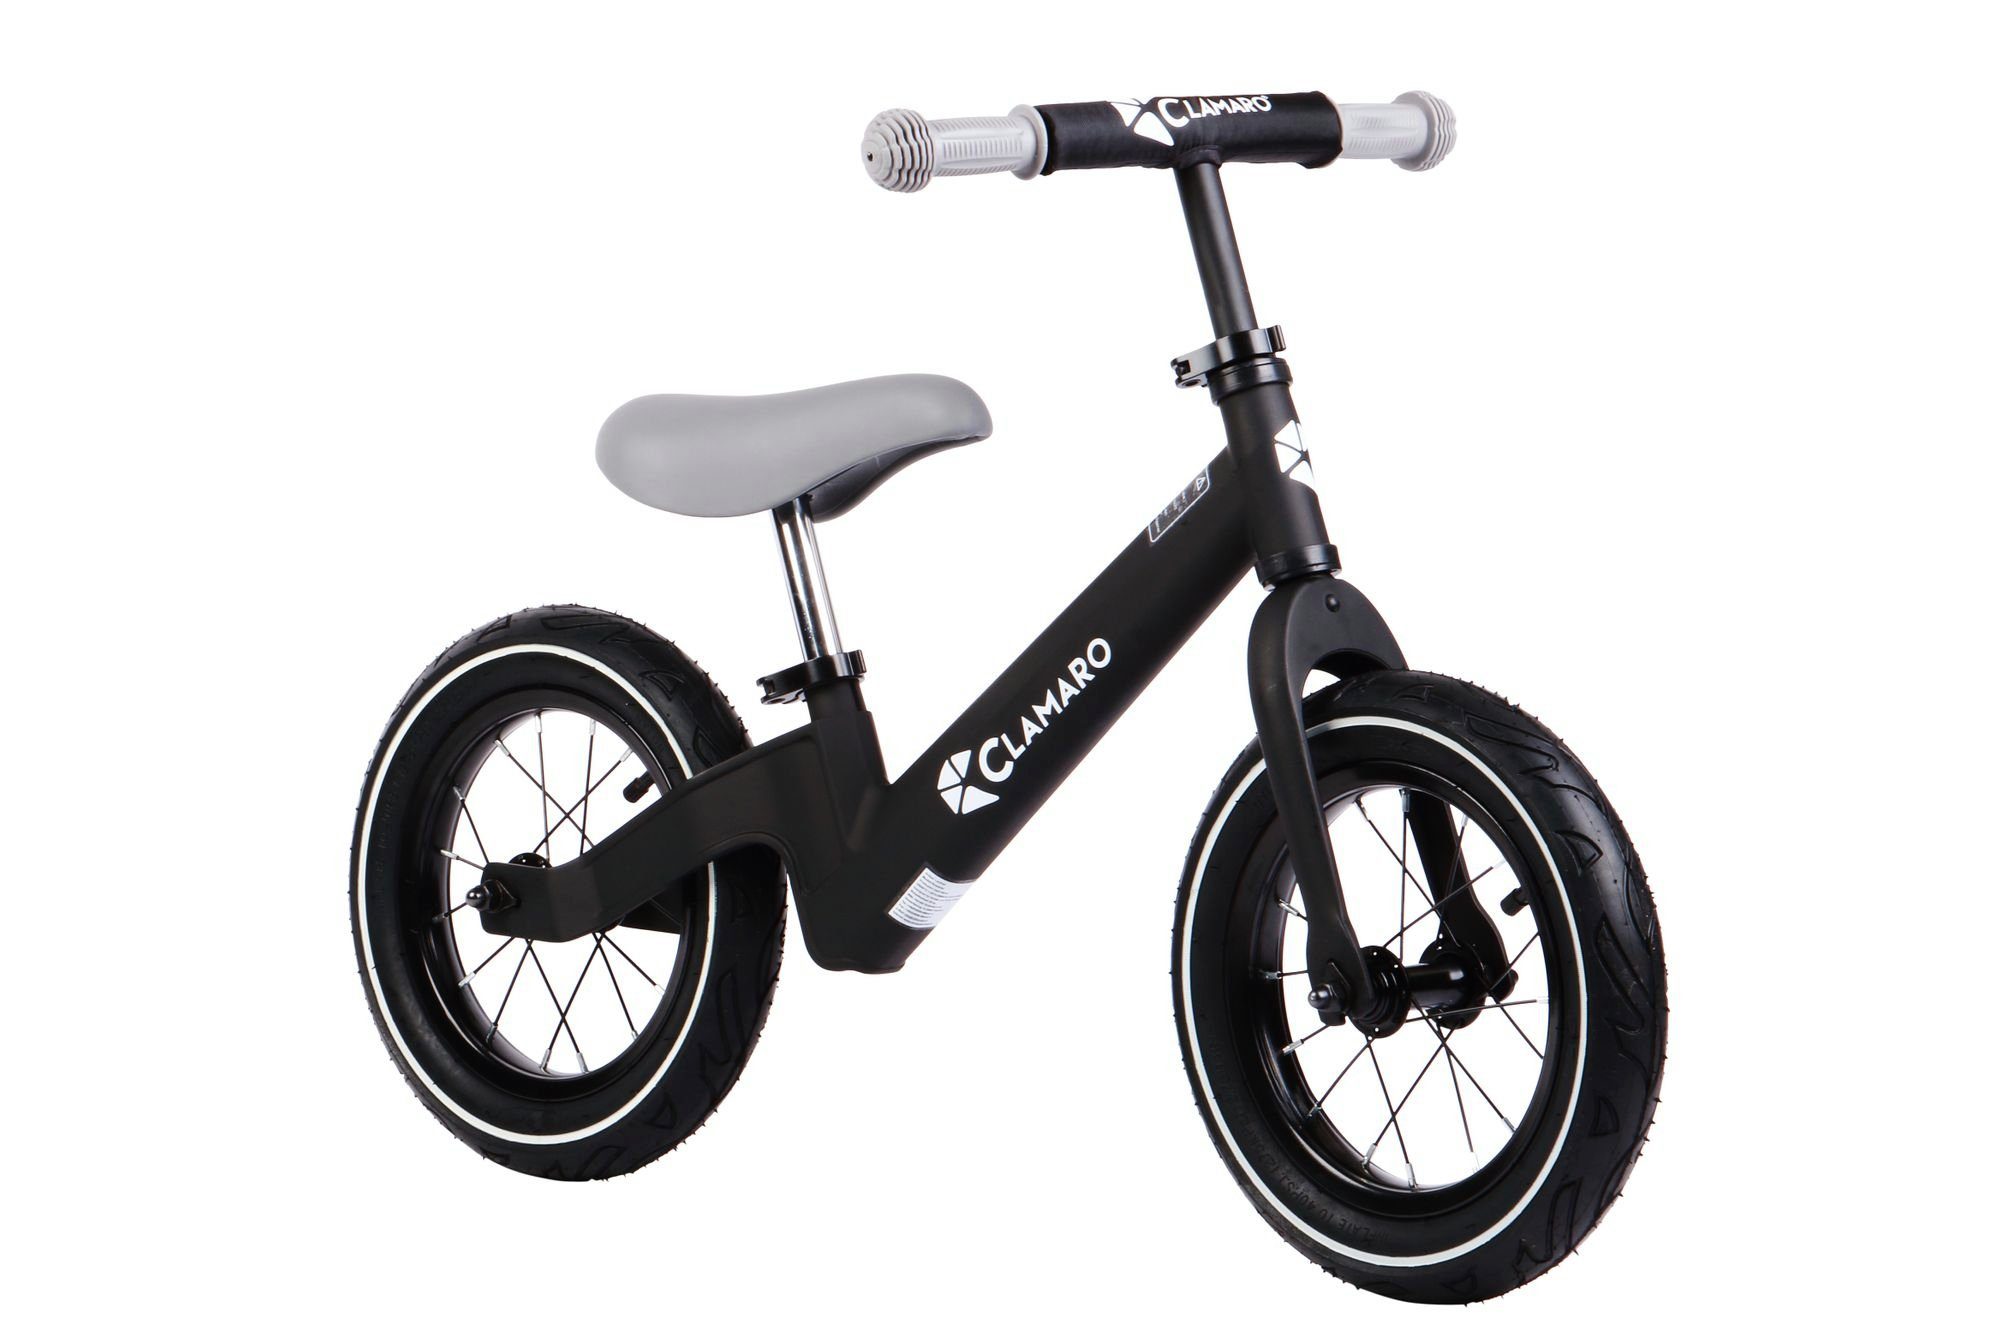 Clamaro Laufrad 12 Zoll, Laufrad Kinder Fahrrad Kinderlaufrad Roadstar mit Luftbereifung 12 Zoll Clamaro Grau